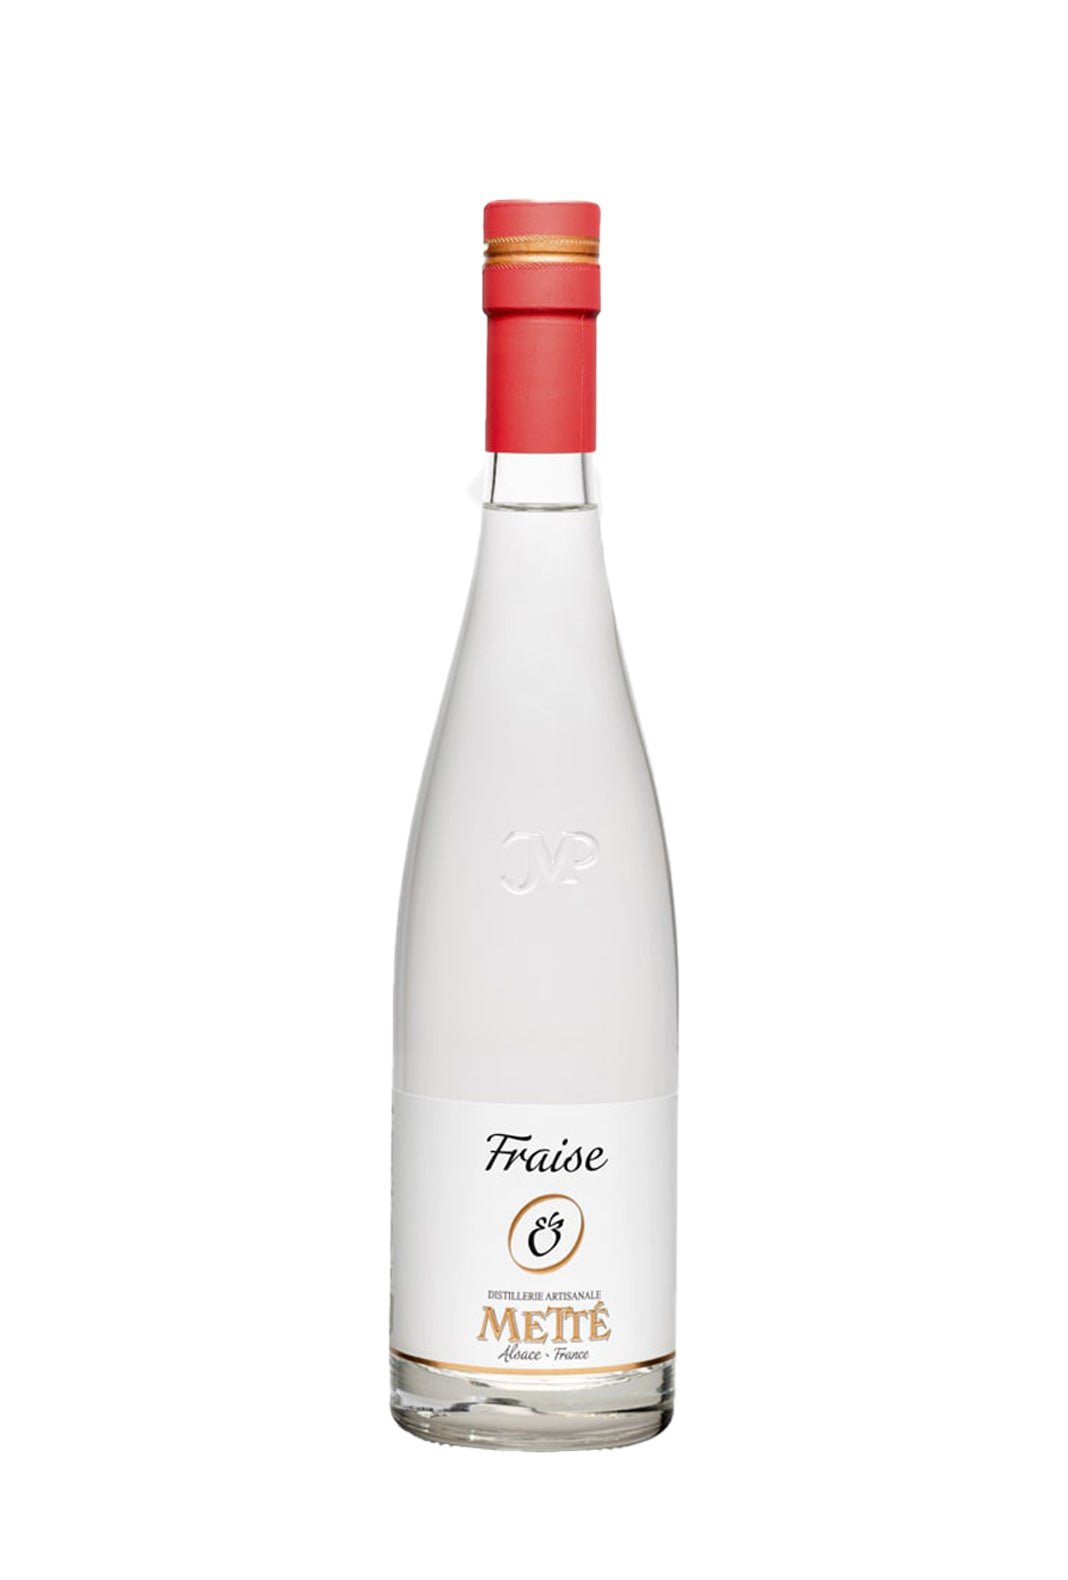 Mette Strawberry Eau de Vie Fruit Spirit 45% 500ml - Fruit Spirits - Liquor Wine Cave